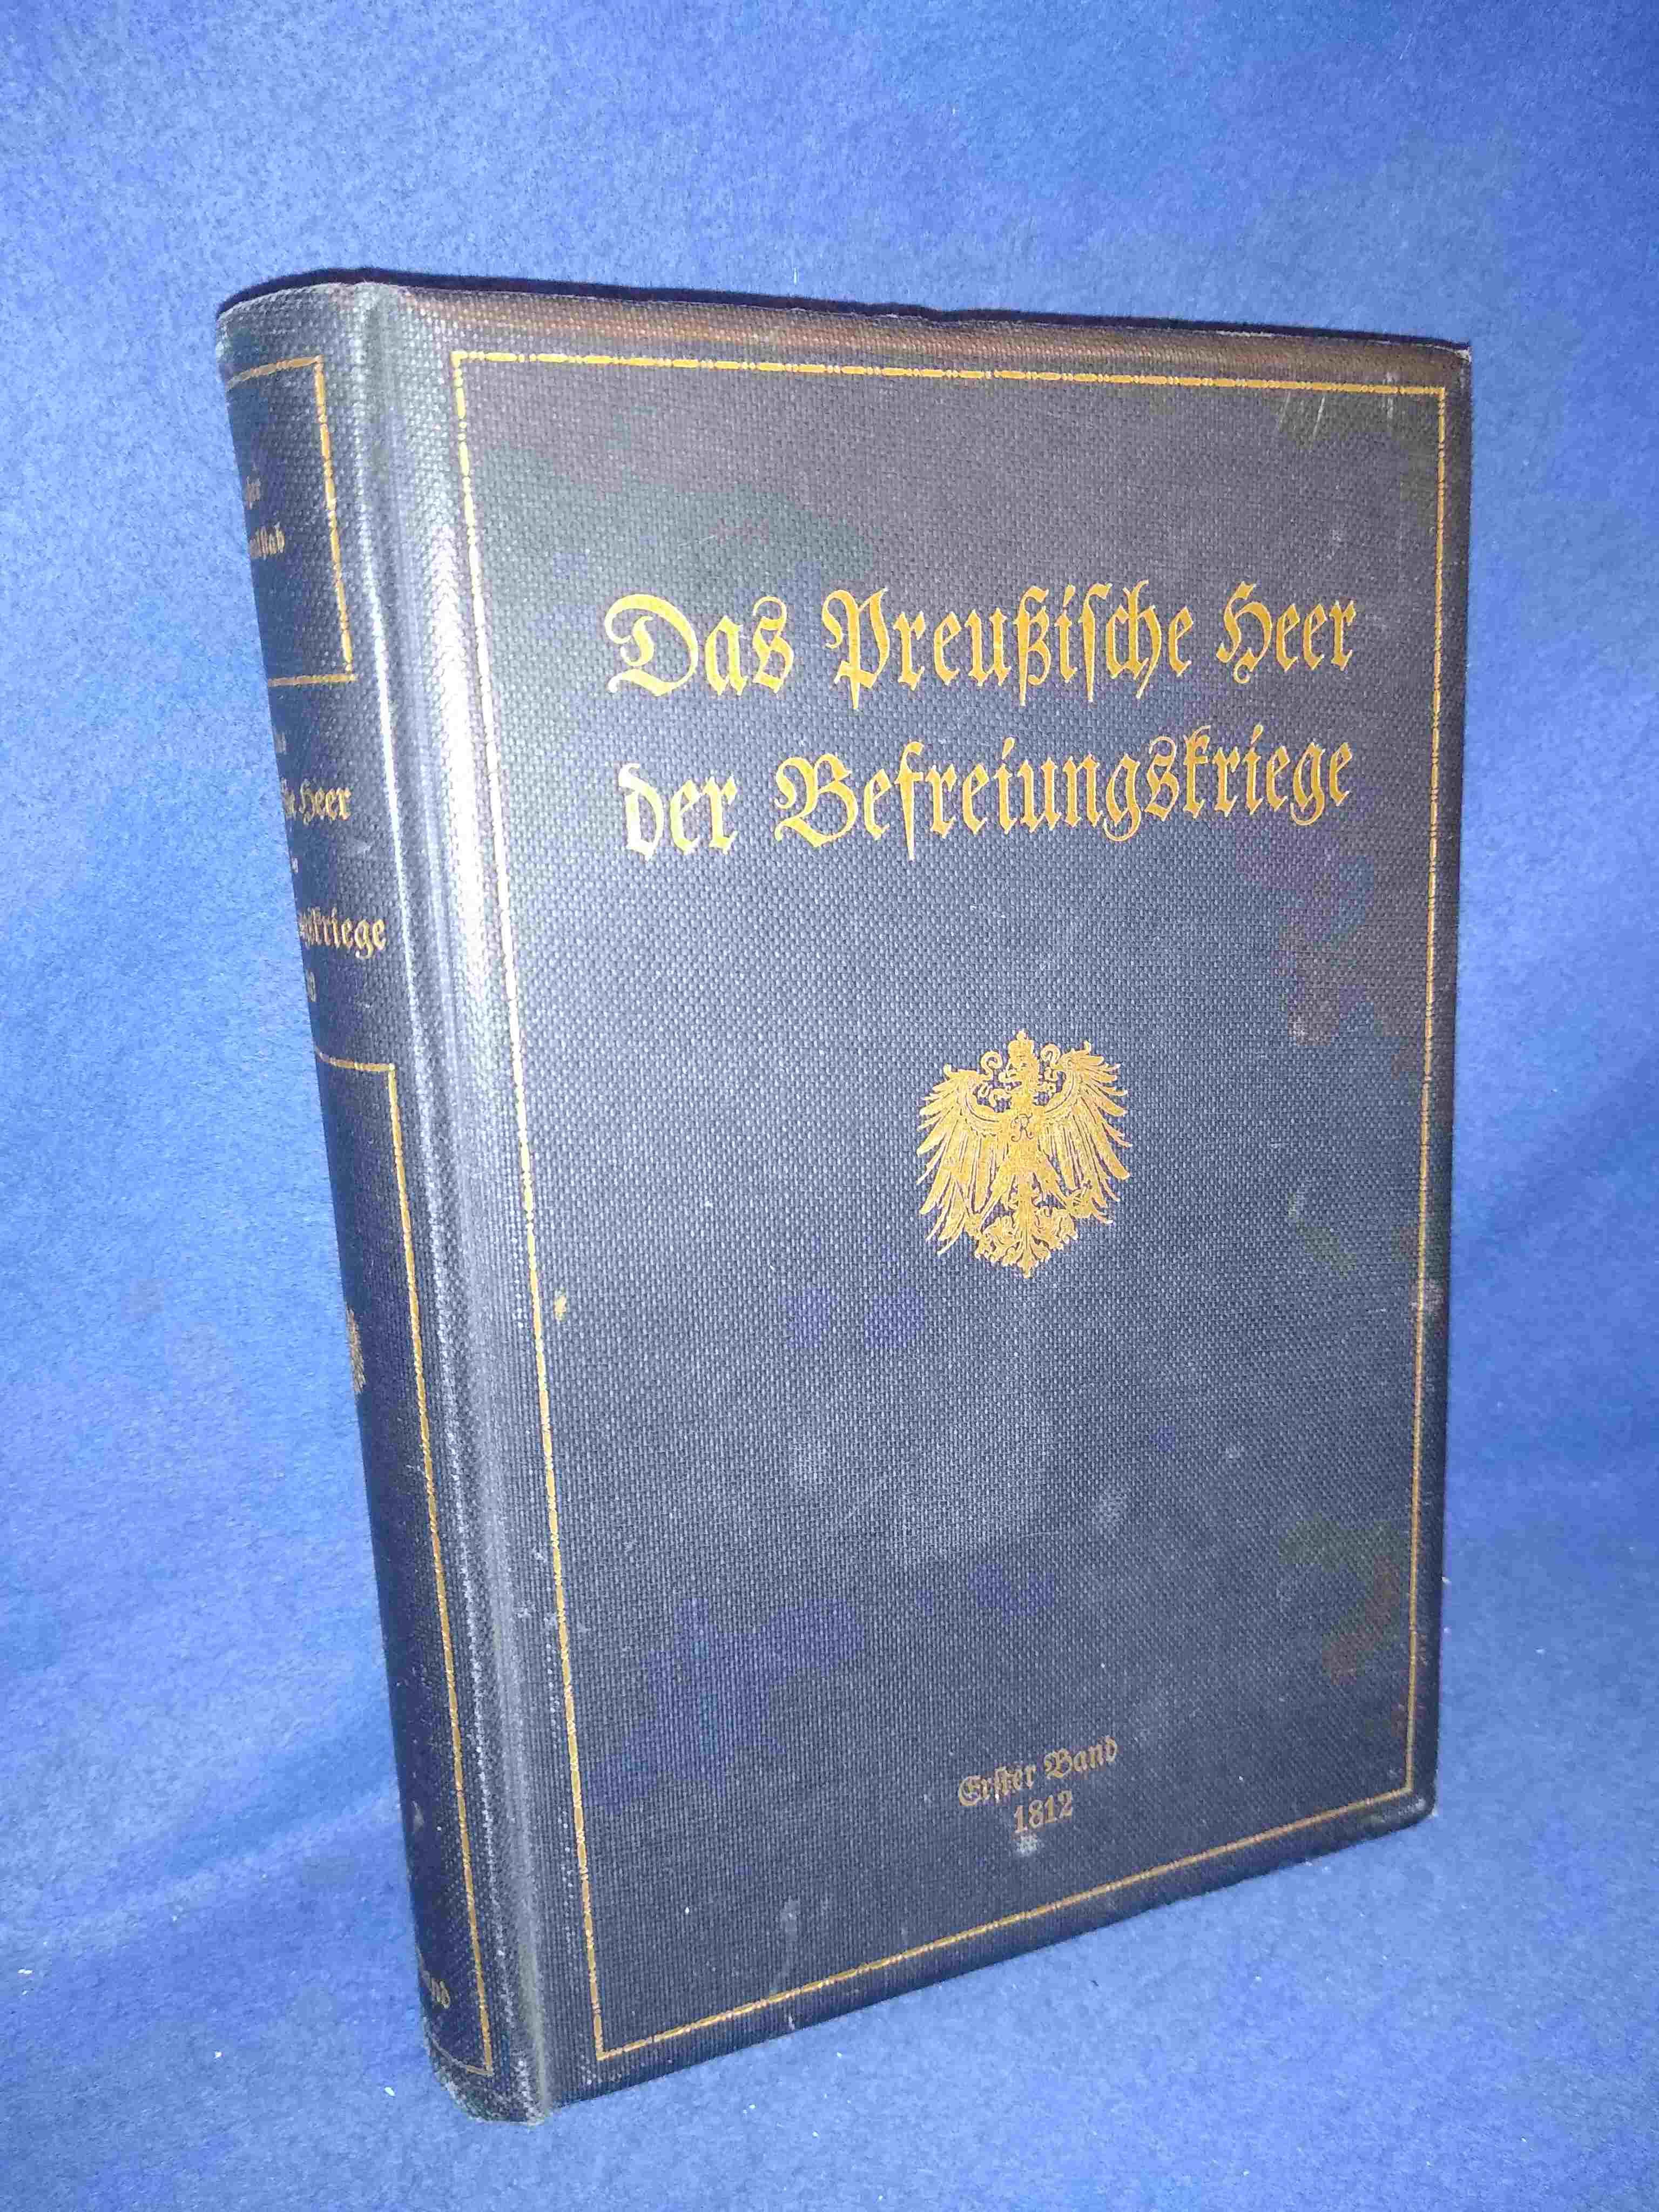 Das Preußische Heer der Befreiungskriege, Band 1: Das preußische Heer im Jahre 1812.